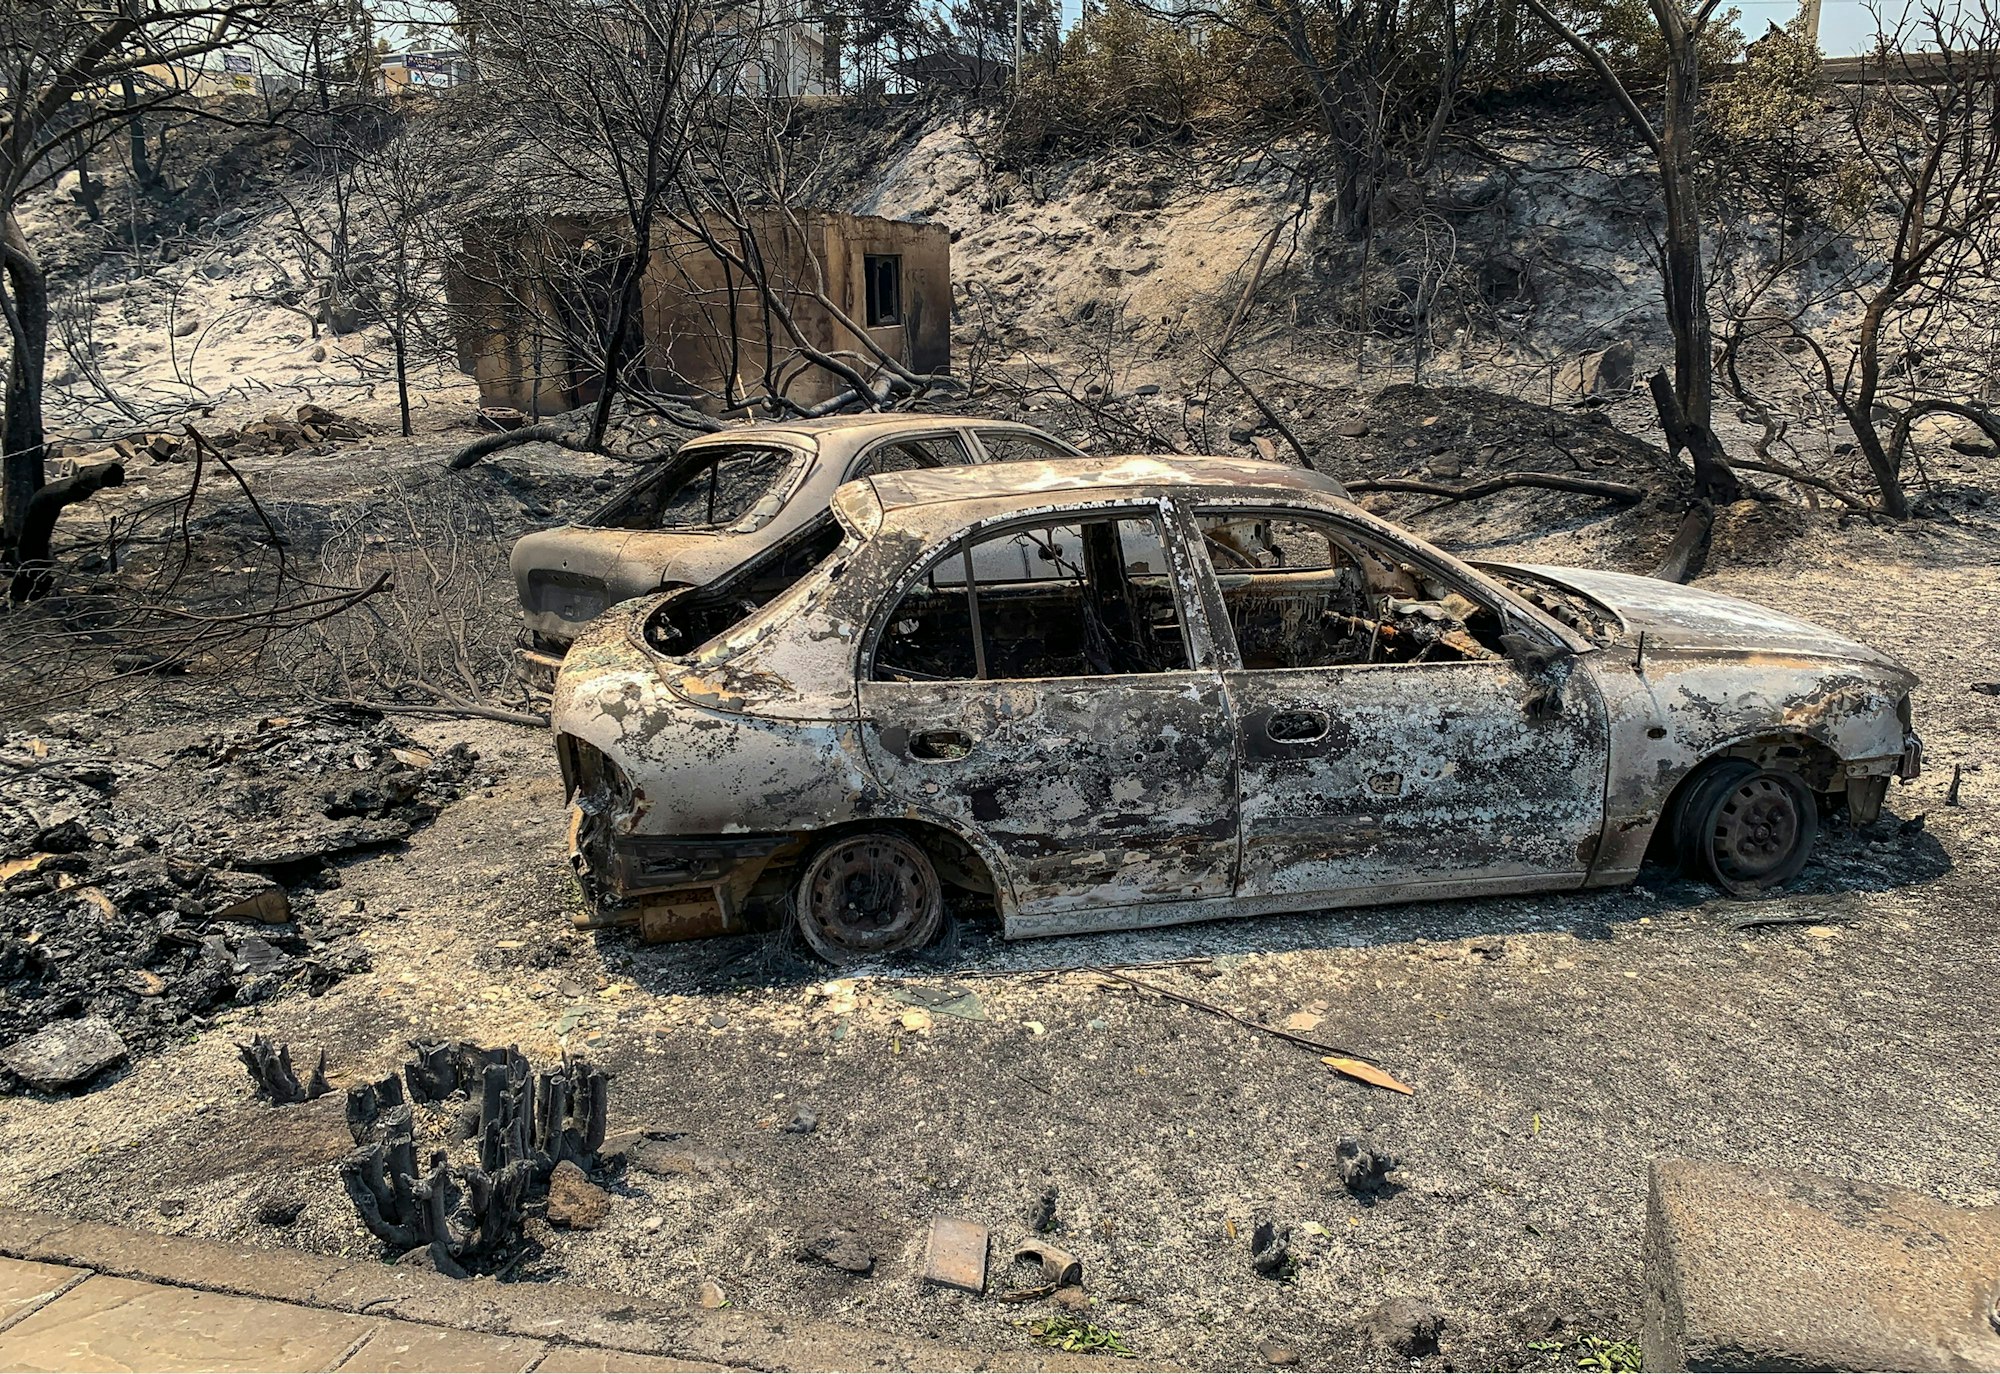 Griechenland, Rhodos: Verbrannte Autowracks stehen nach katastrophalen Waldbränden auf einer Straße.